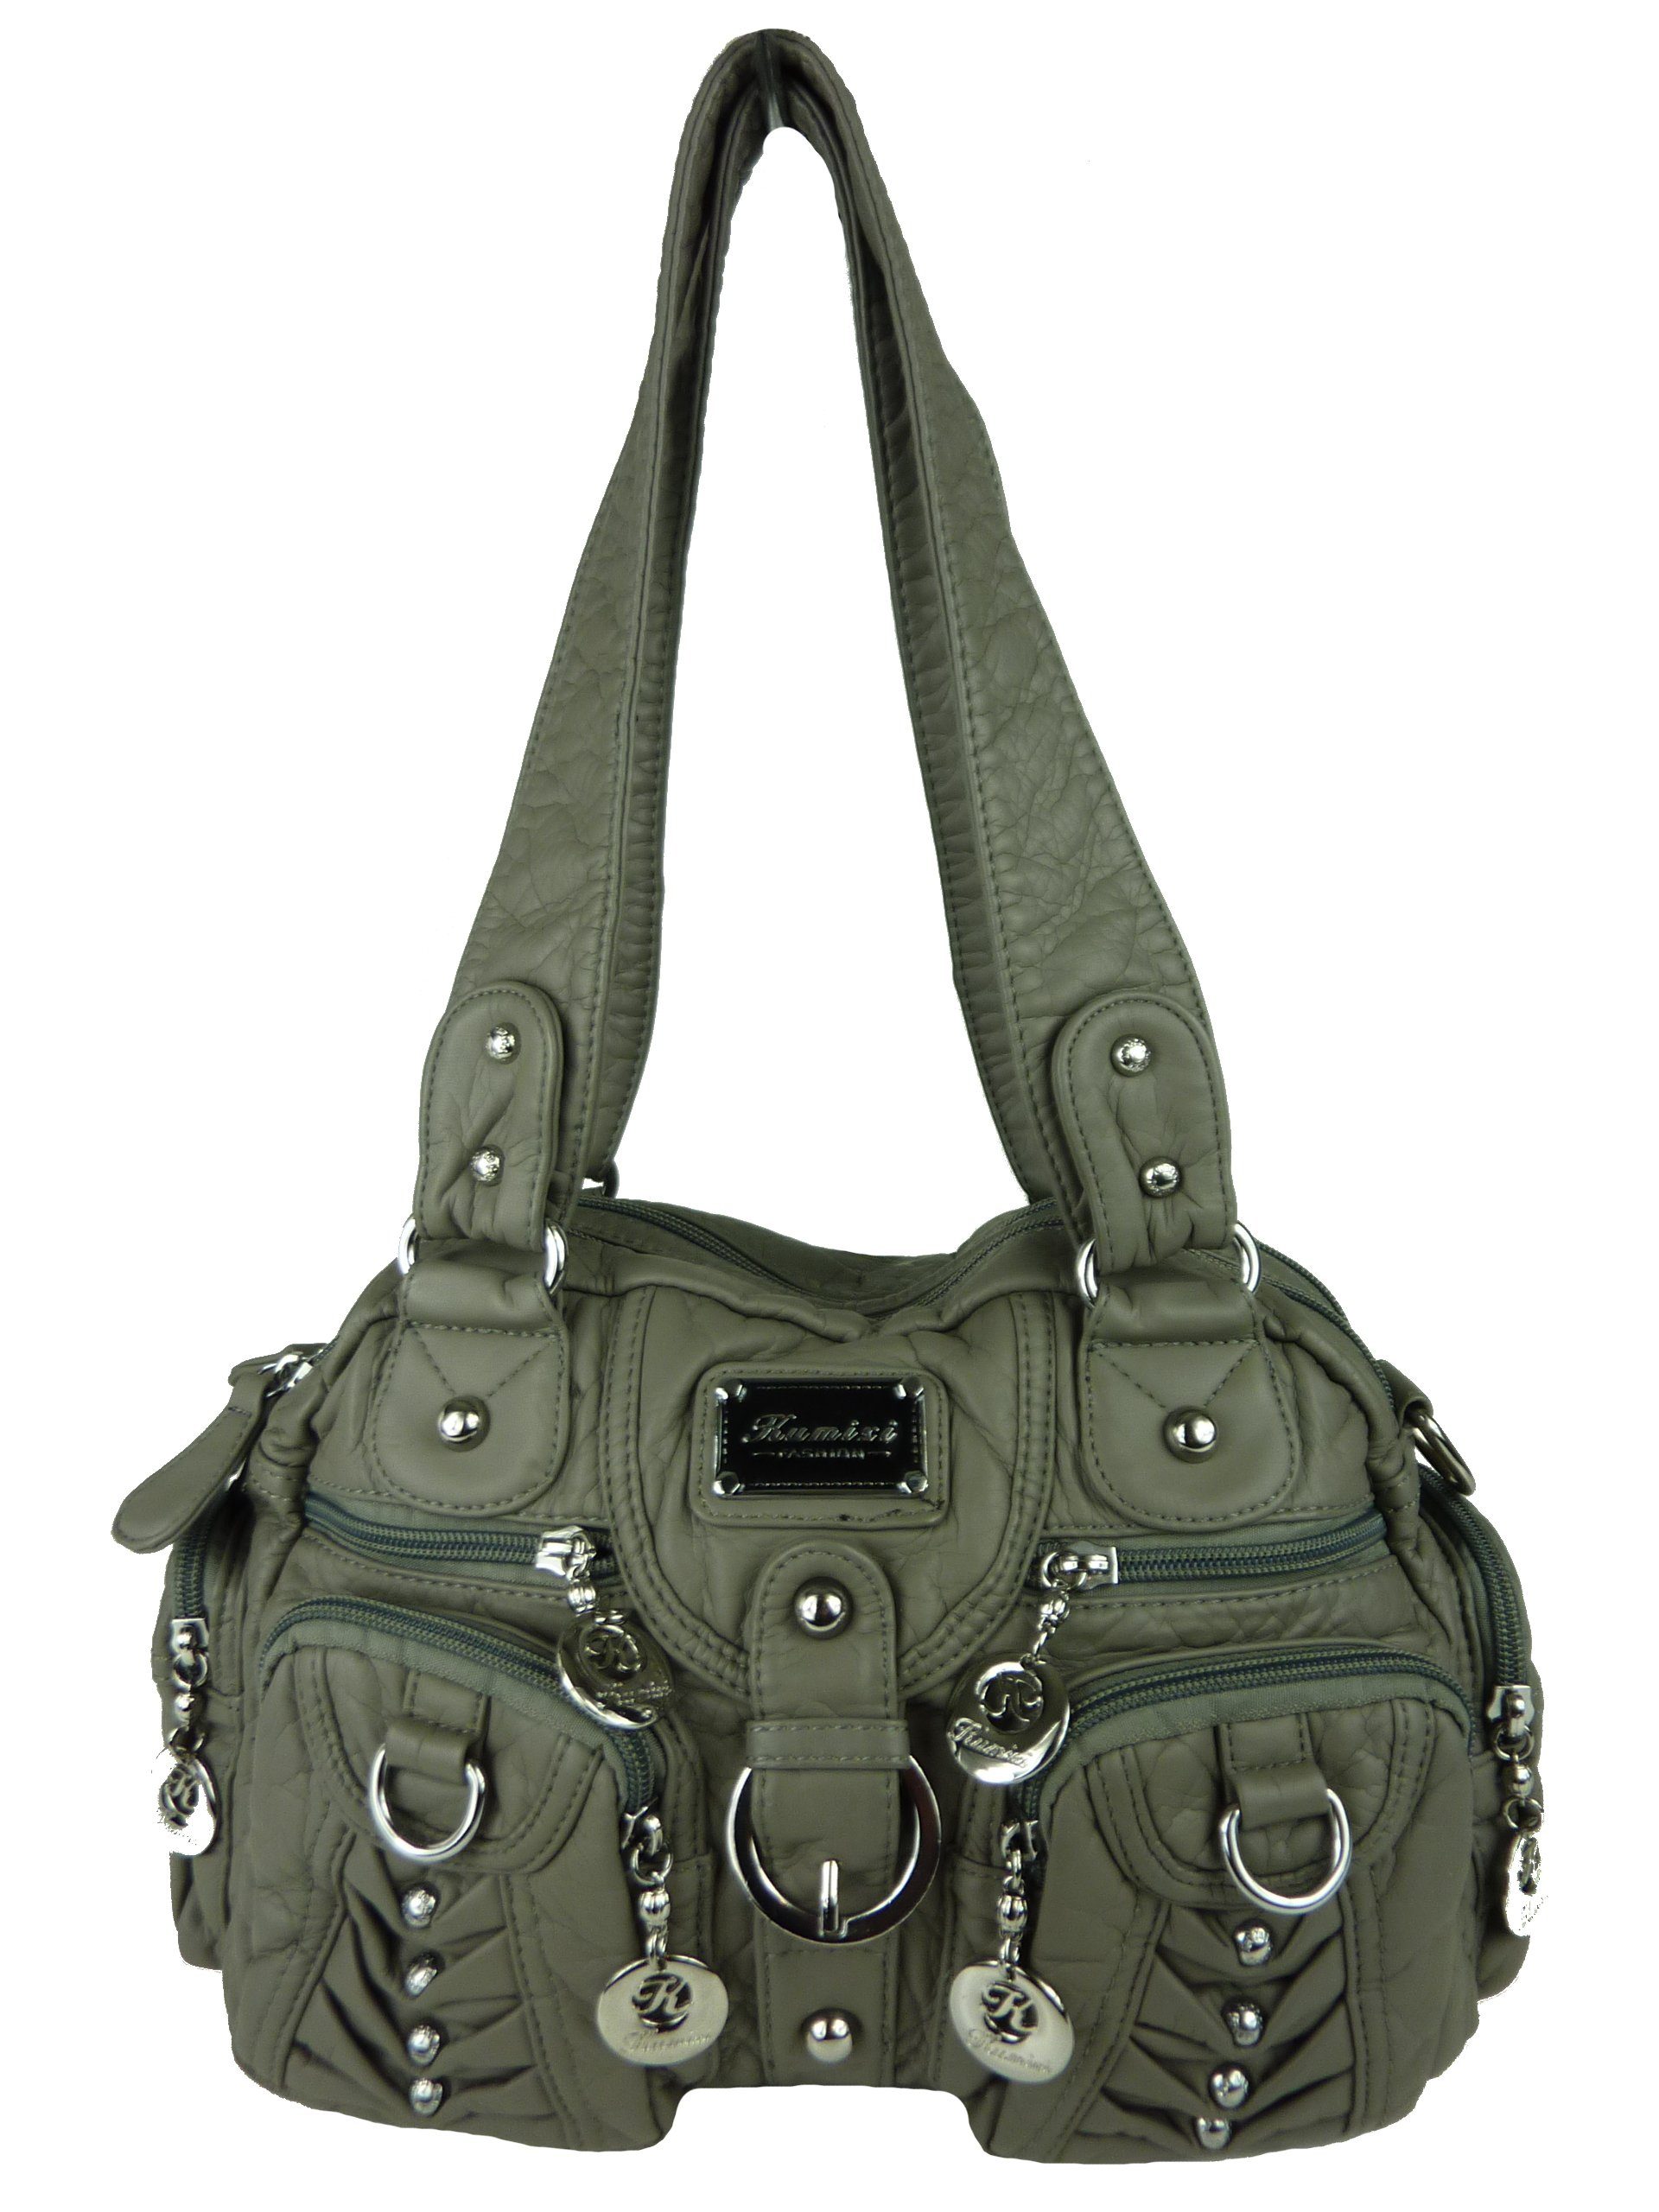 Taschen4life Schultertasche klassische Damen Handtasche (Schultertasche) mit Nieten AKW22032, viele Fächer, verstellbarer abnehmbarer Schulterriemen grau